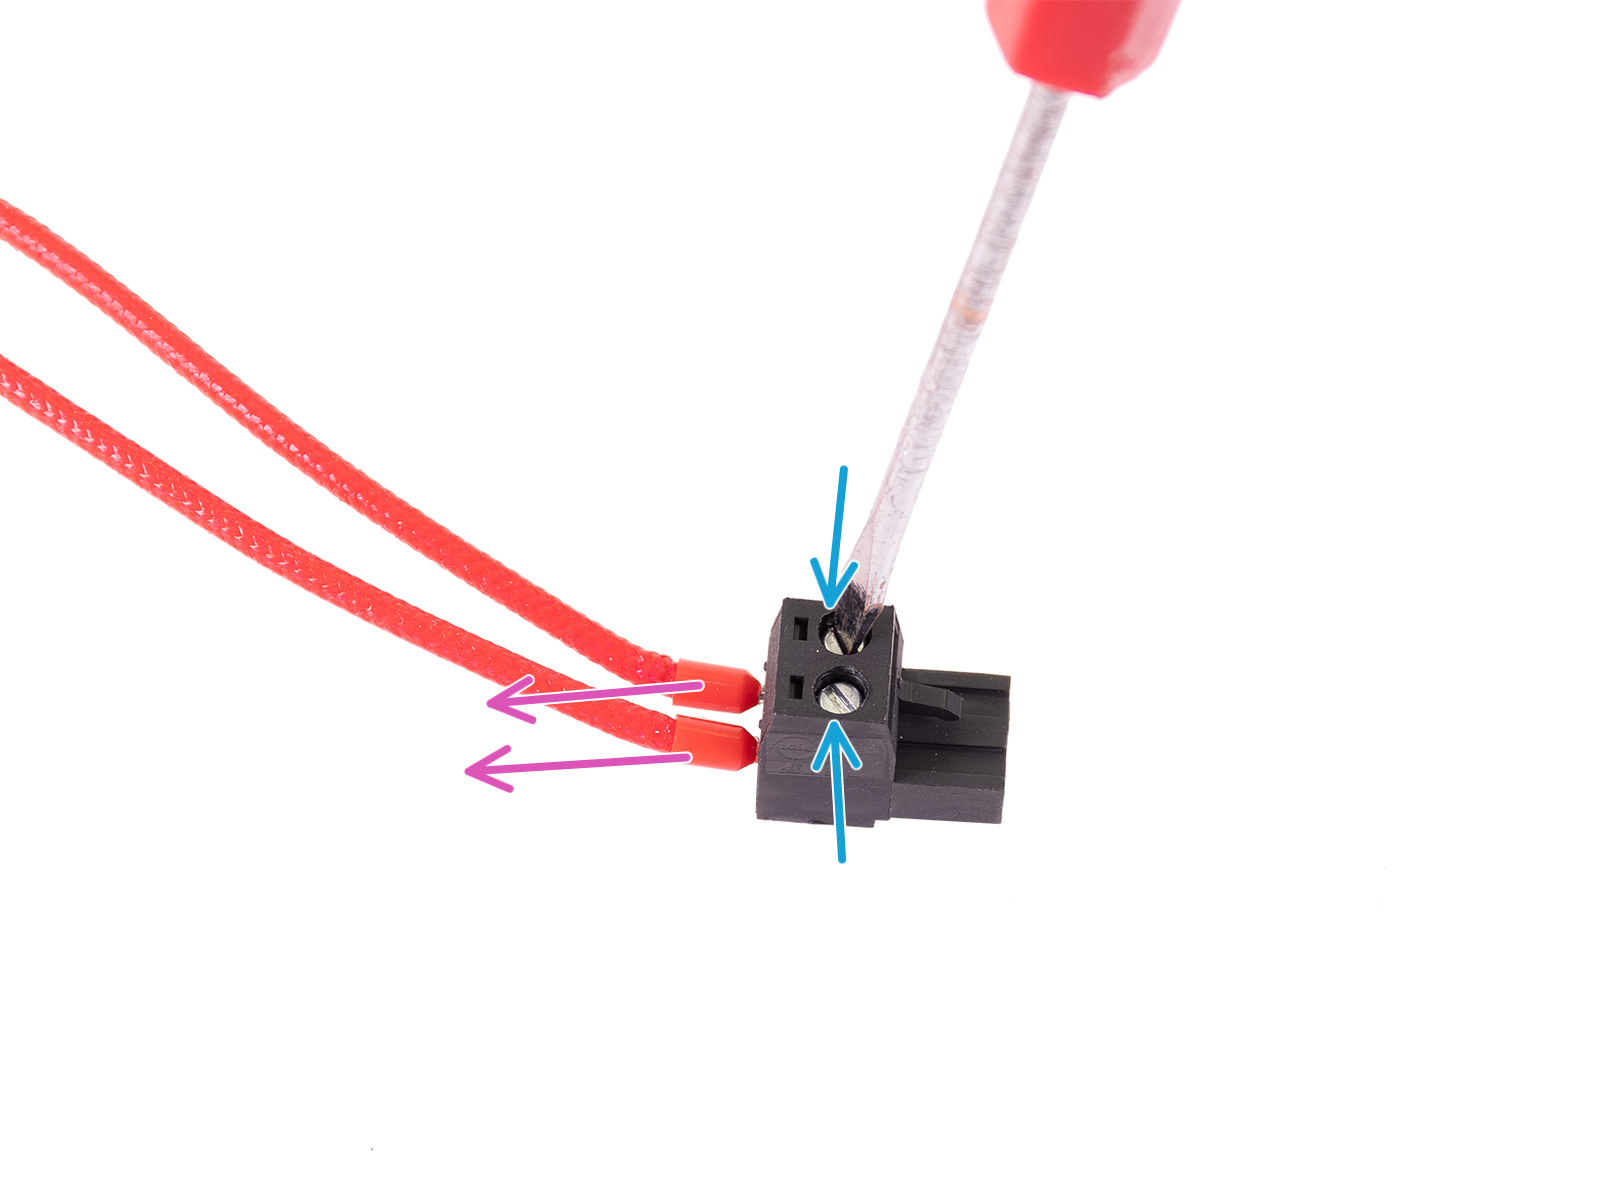 Retirando el conector Molex (diseño nuevo)